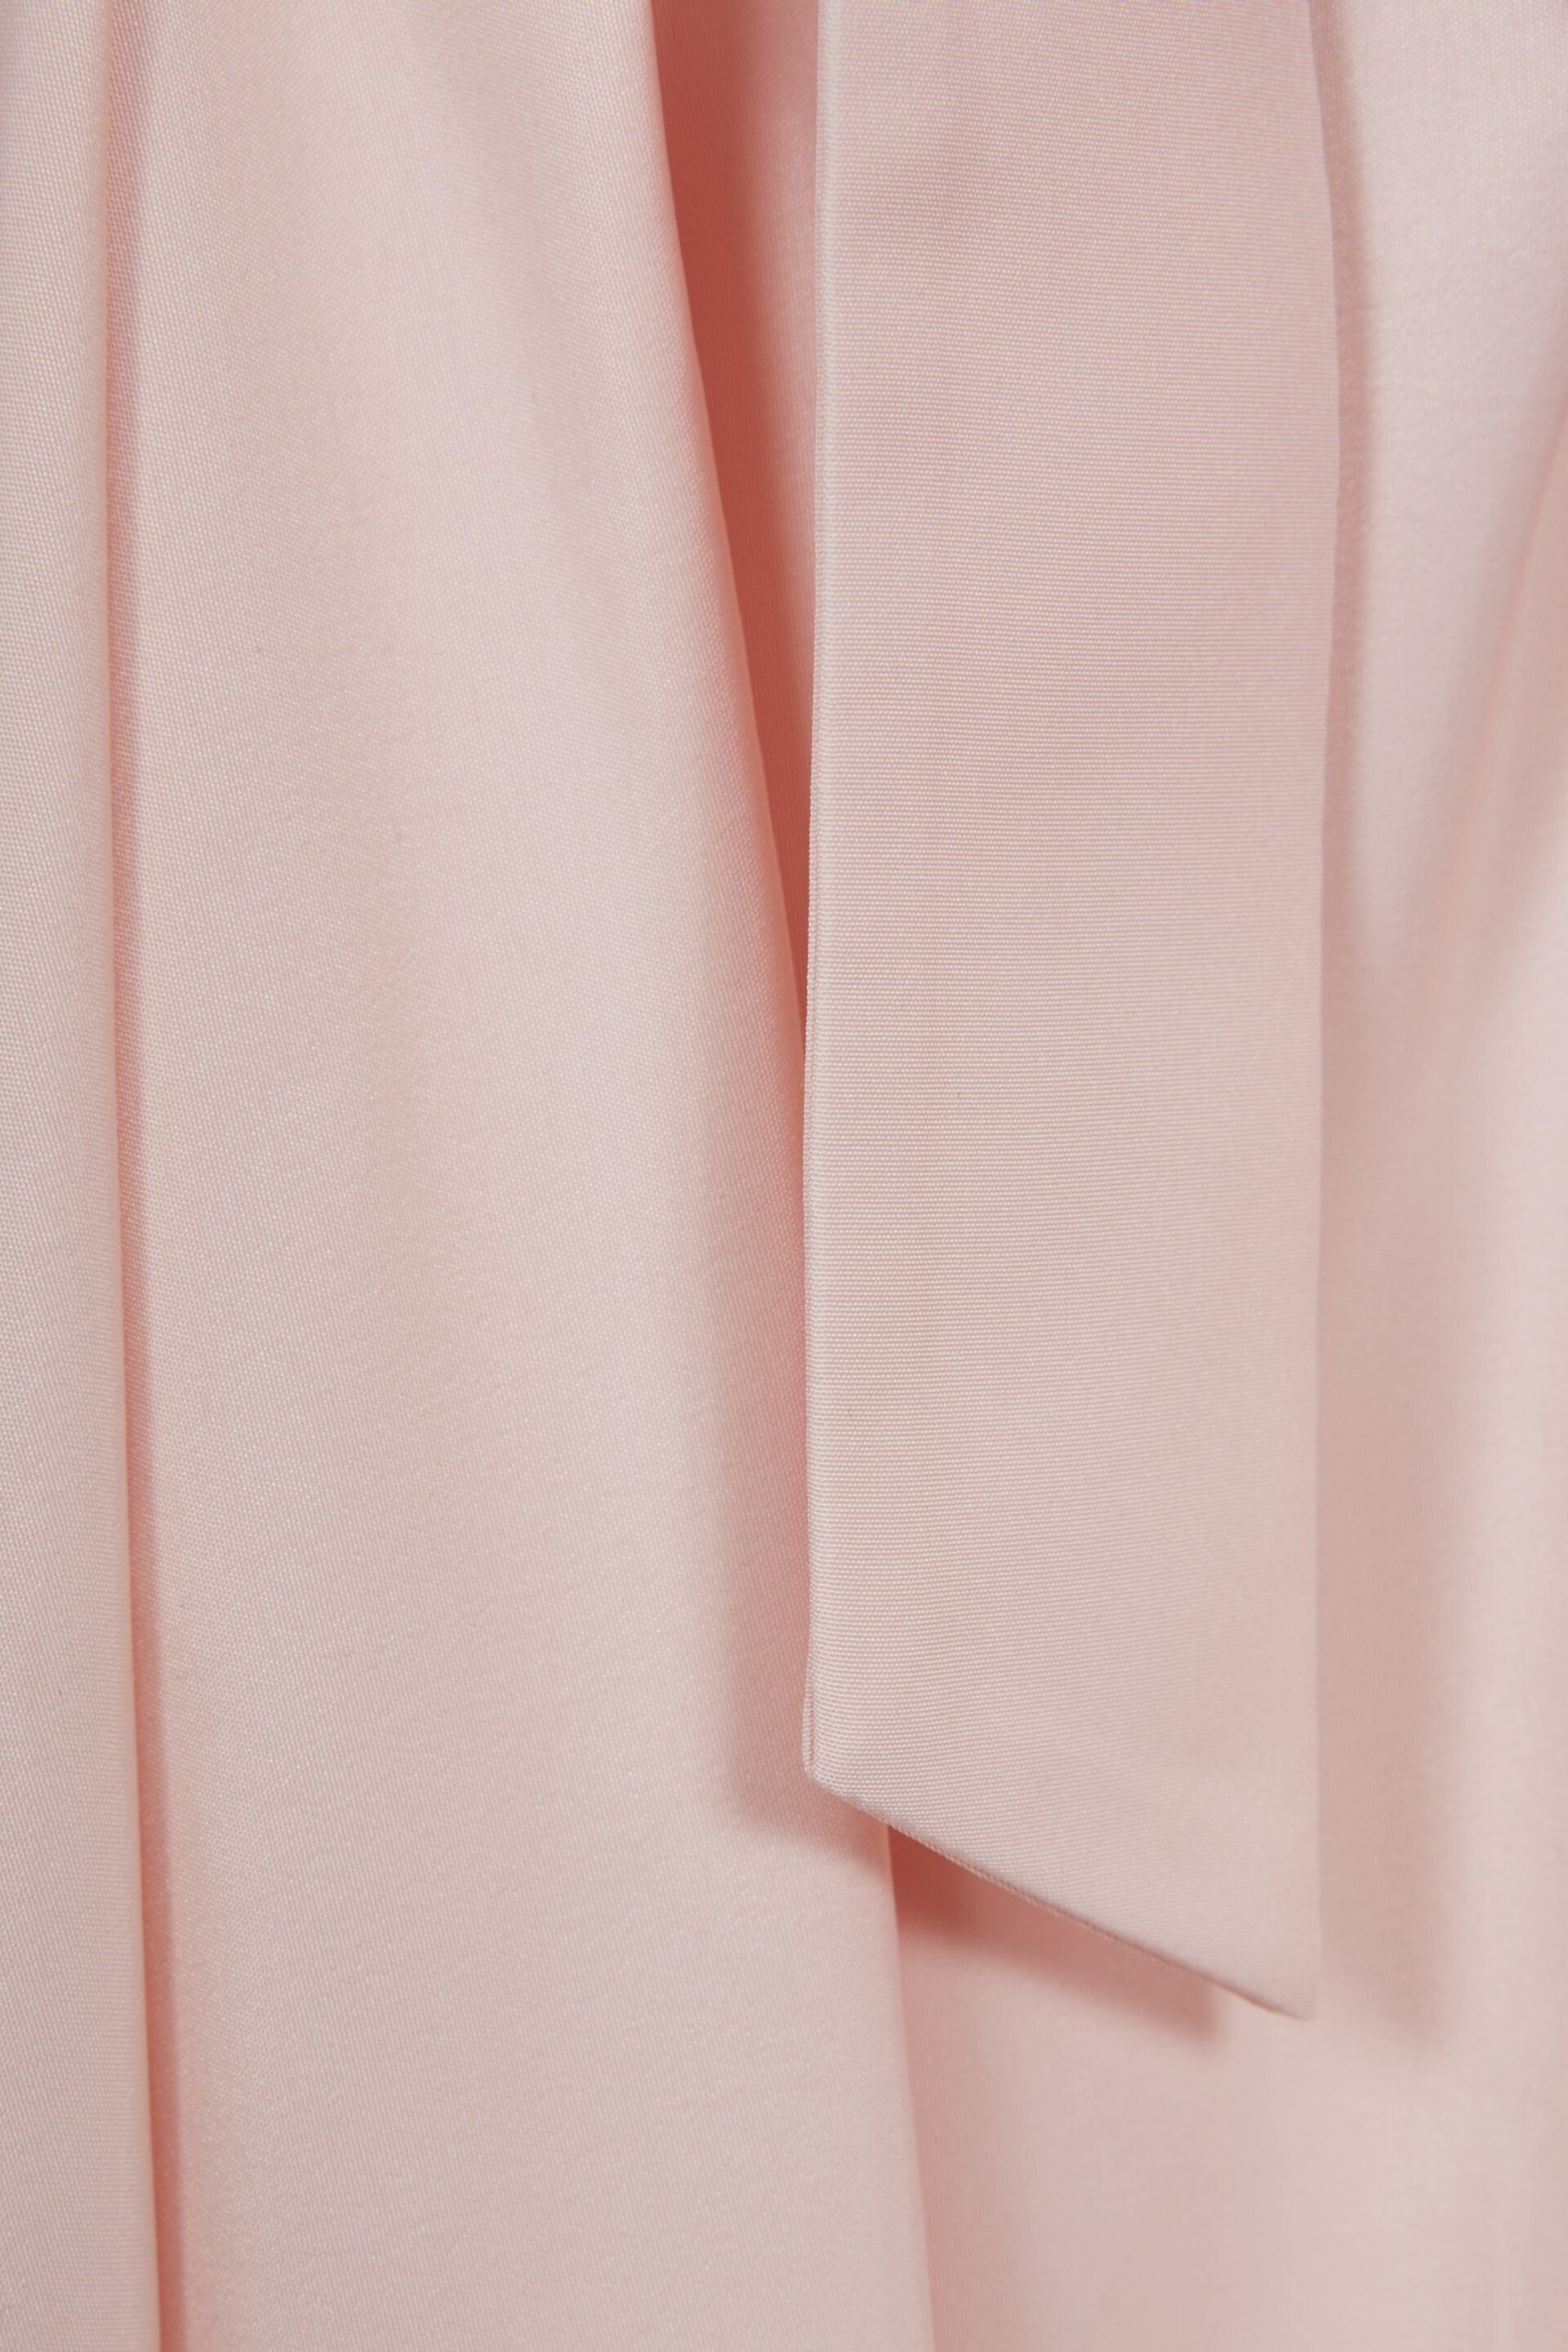 Reiss Pink Garcia Senior Pleated Belted Taffeta Midi Skirt - Image 6 of 6